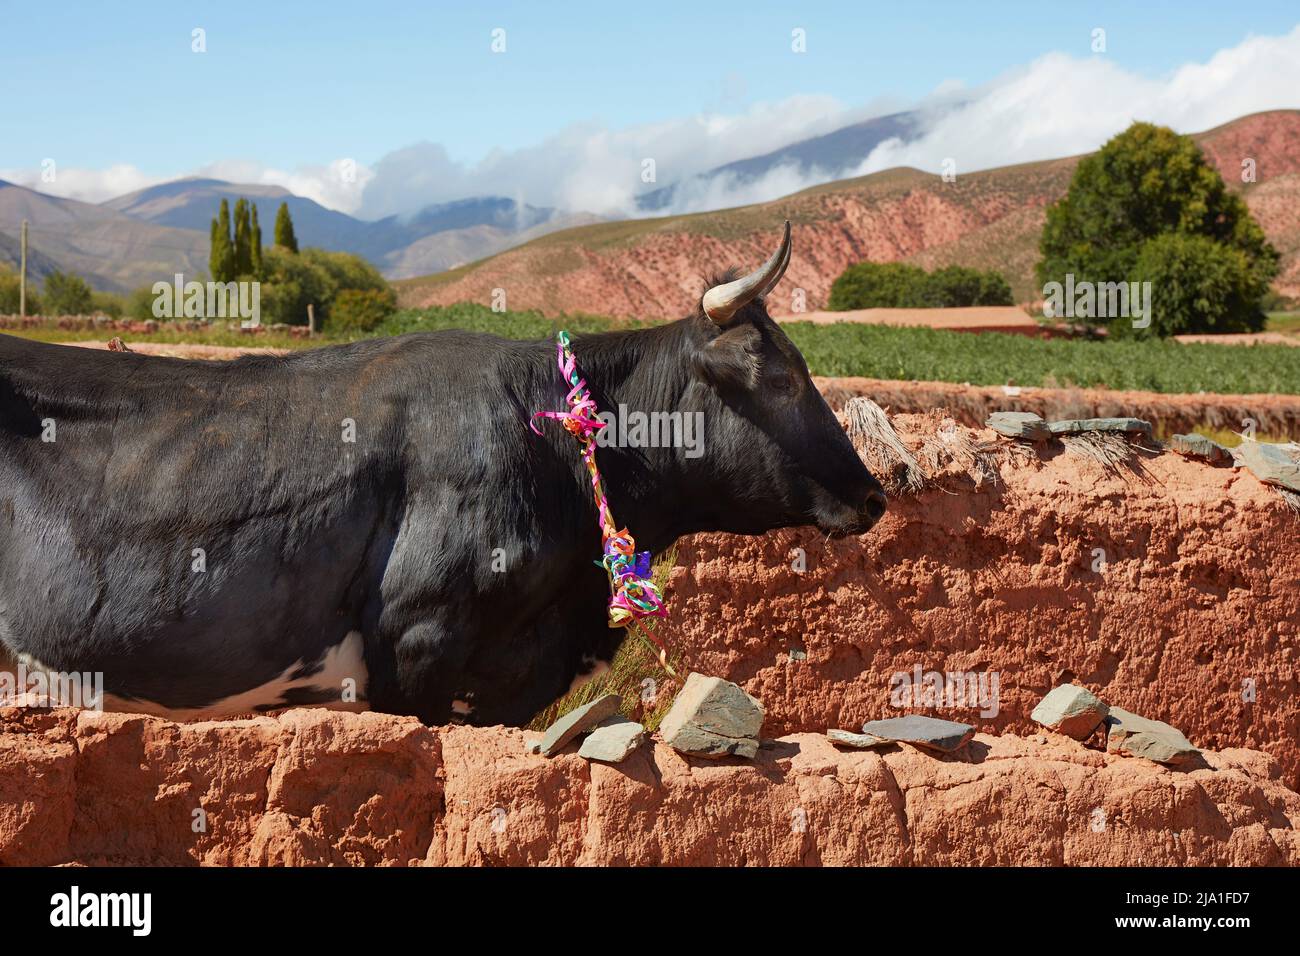 Eine Kuh, die anlässlich des Karnevals geschmückt wurde. Cianzo Valley, Jujuy, Argentinien. Stockfoto